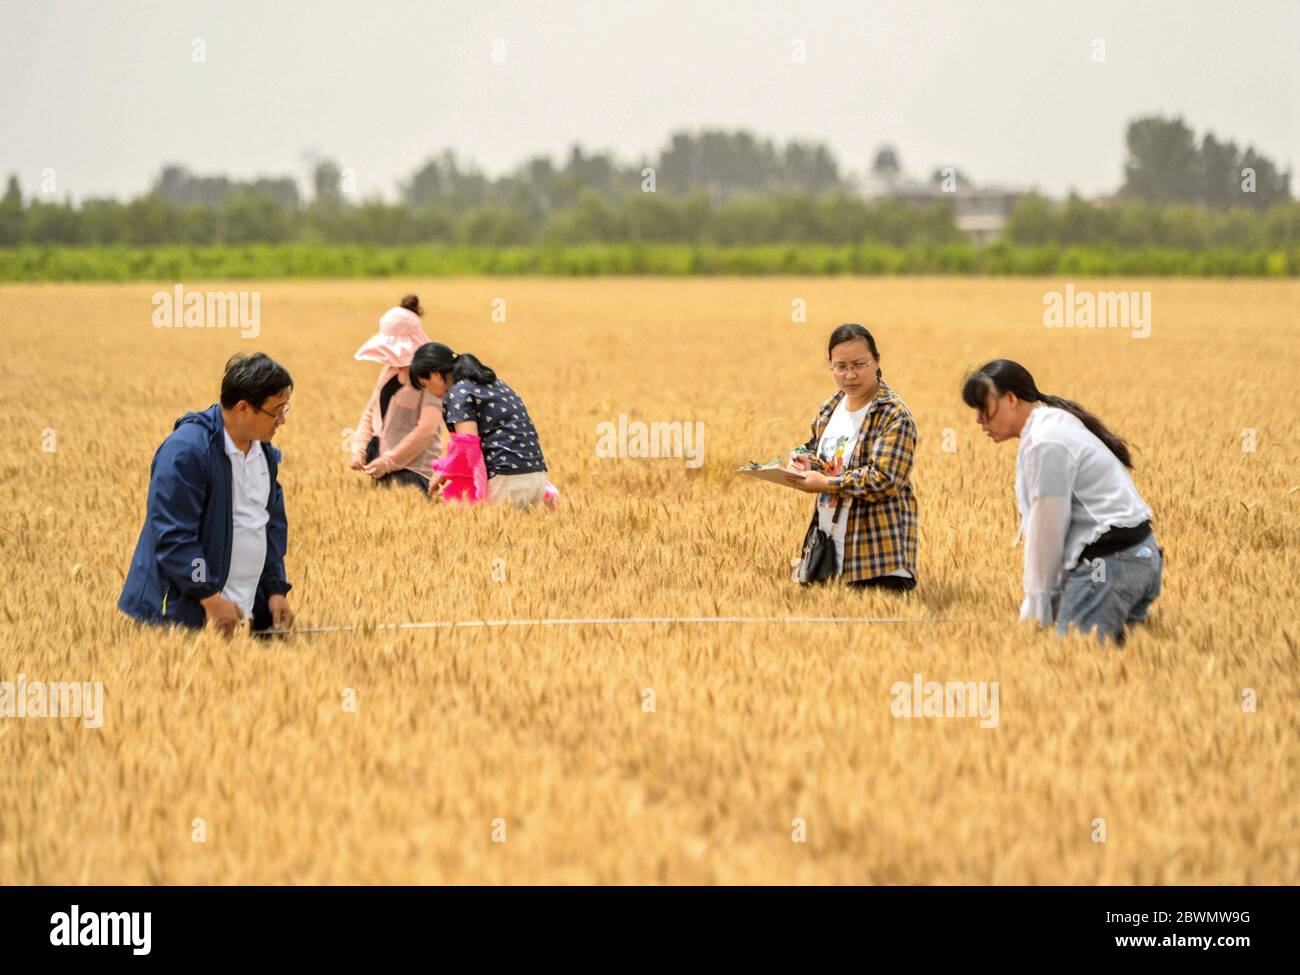 (200602) -- HANDAN, 2 juin 2020 (Xinhua) -- des techniciens agricoles effectuent une surveillance du rendement dans un champ de blé du village de Xidiqiu, dans le comté de Linzhang, à Handan, dans la province de Hebei, au nord de la Chine, le 2 juin 2020. Les techniciens agricoles ont effectué mardi à Linzhang une surveillance du rendement, étape de la récolte à grande échelle du blé. Les travaux de remappage mécanique du blé à Hebei dureront du 5 au 21 juin. (Xinhua/Wang Xiao) Banque D'Images